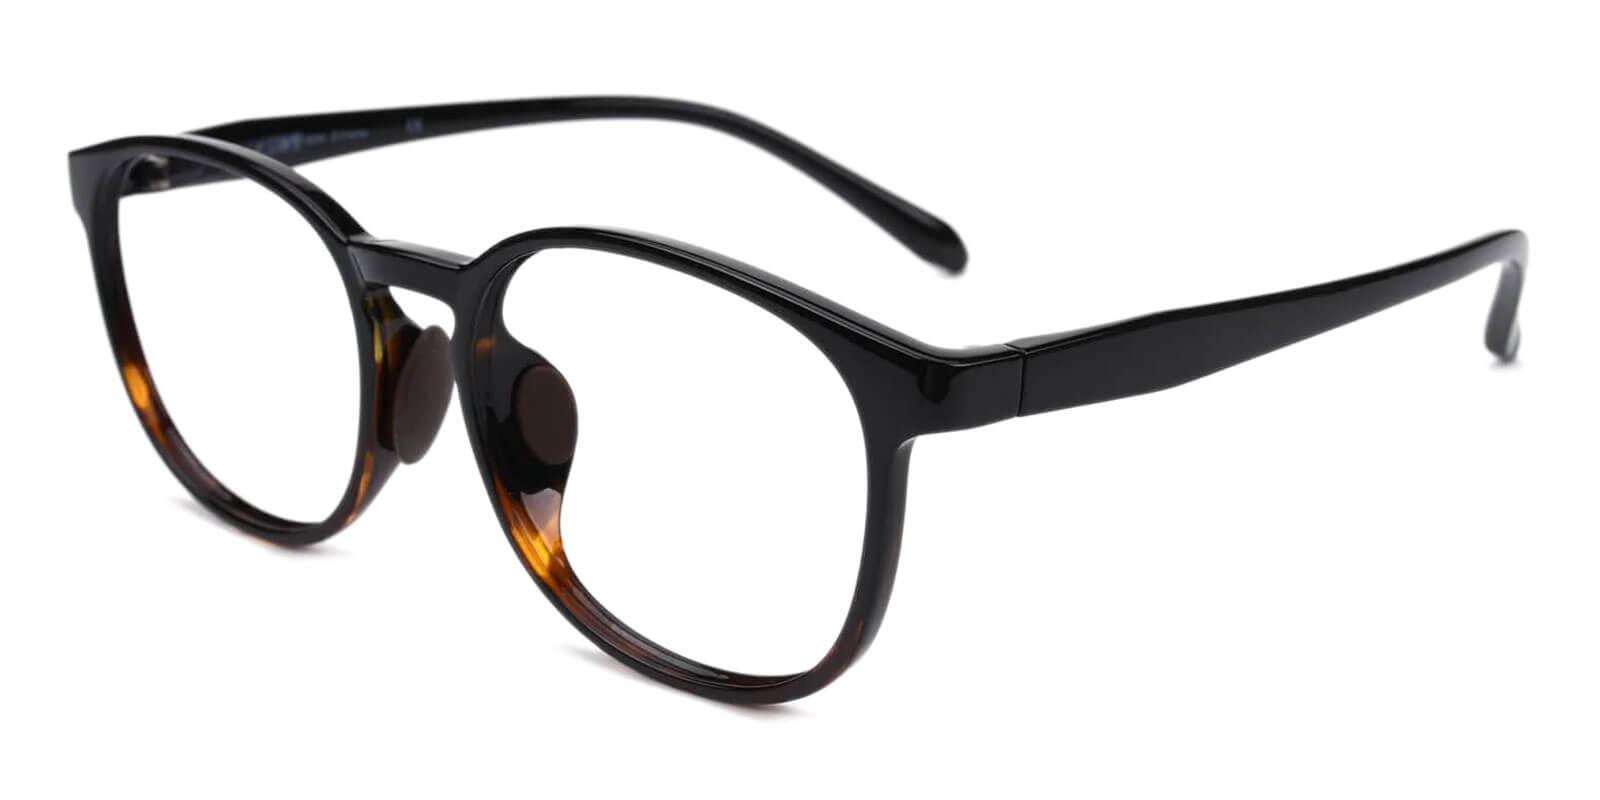 Alchemist Black TR Eyeglasses , UniversalBridgeFit , Lightweight Frames from ABBE Glasses